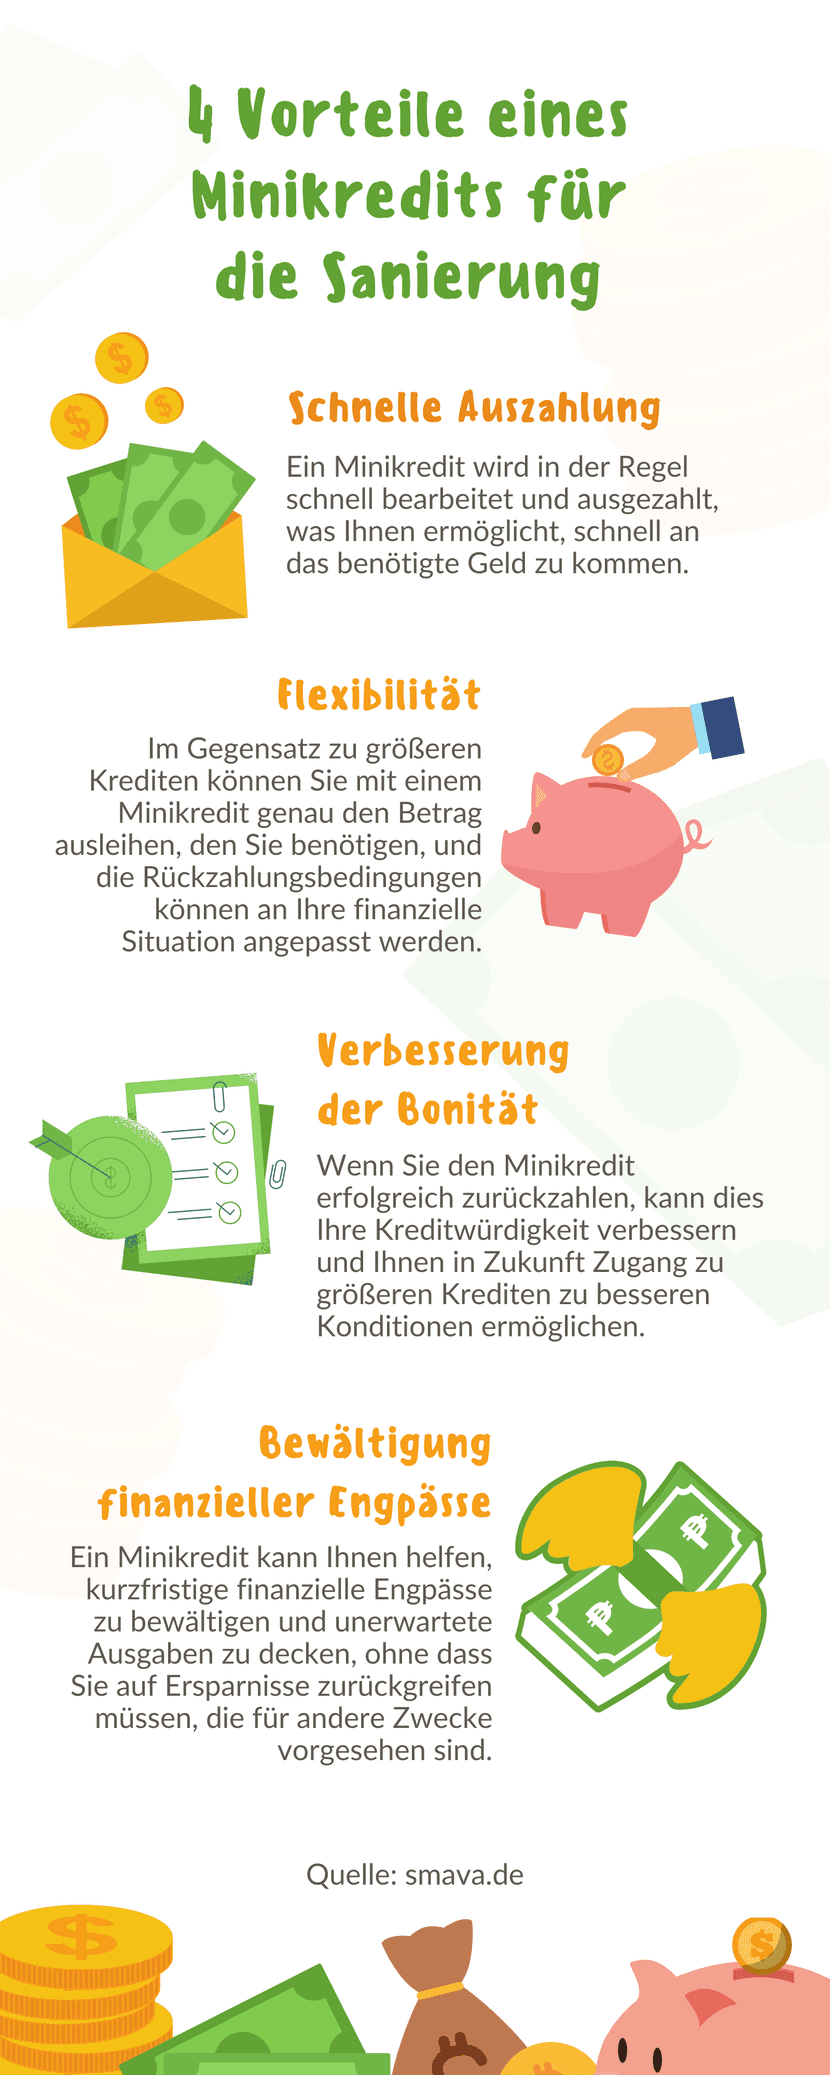 Infografik Minikredit: Die Vorteile eines Minikredits bei der Sanierung